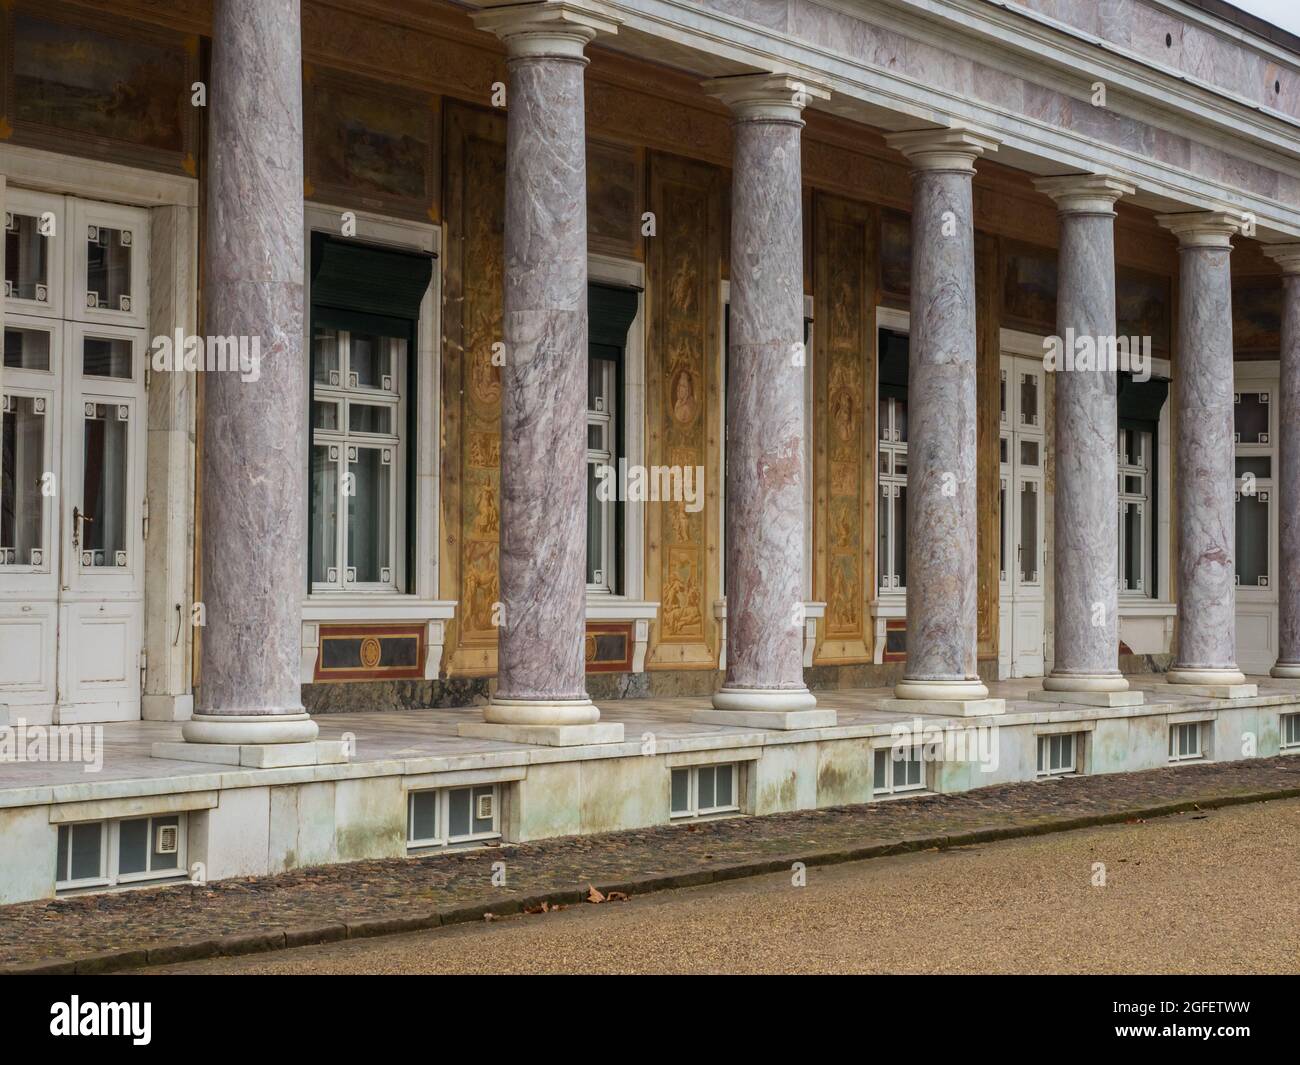 Potsdam, Poczdam, Deutschland - 17 März 2019: Das Marmorpalais, Marmorpalais, ist eine ehemalige königliche Residenz in Potsdam, nahe Berlin in Deutschland. West Eur Stockfoto